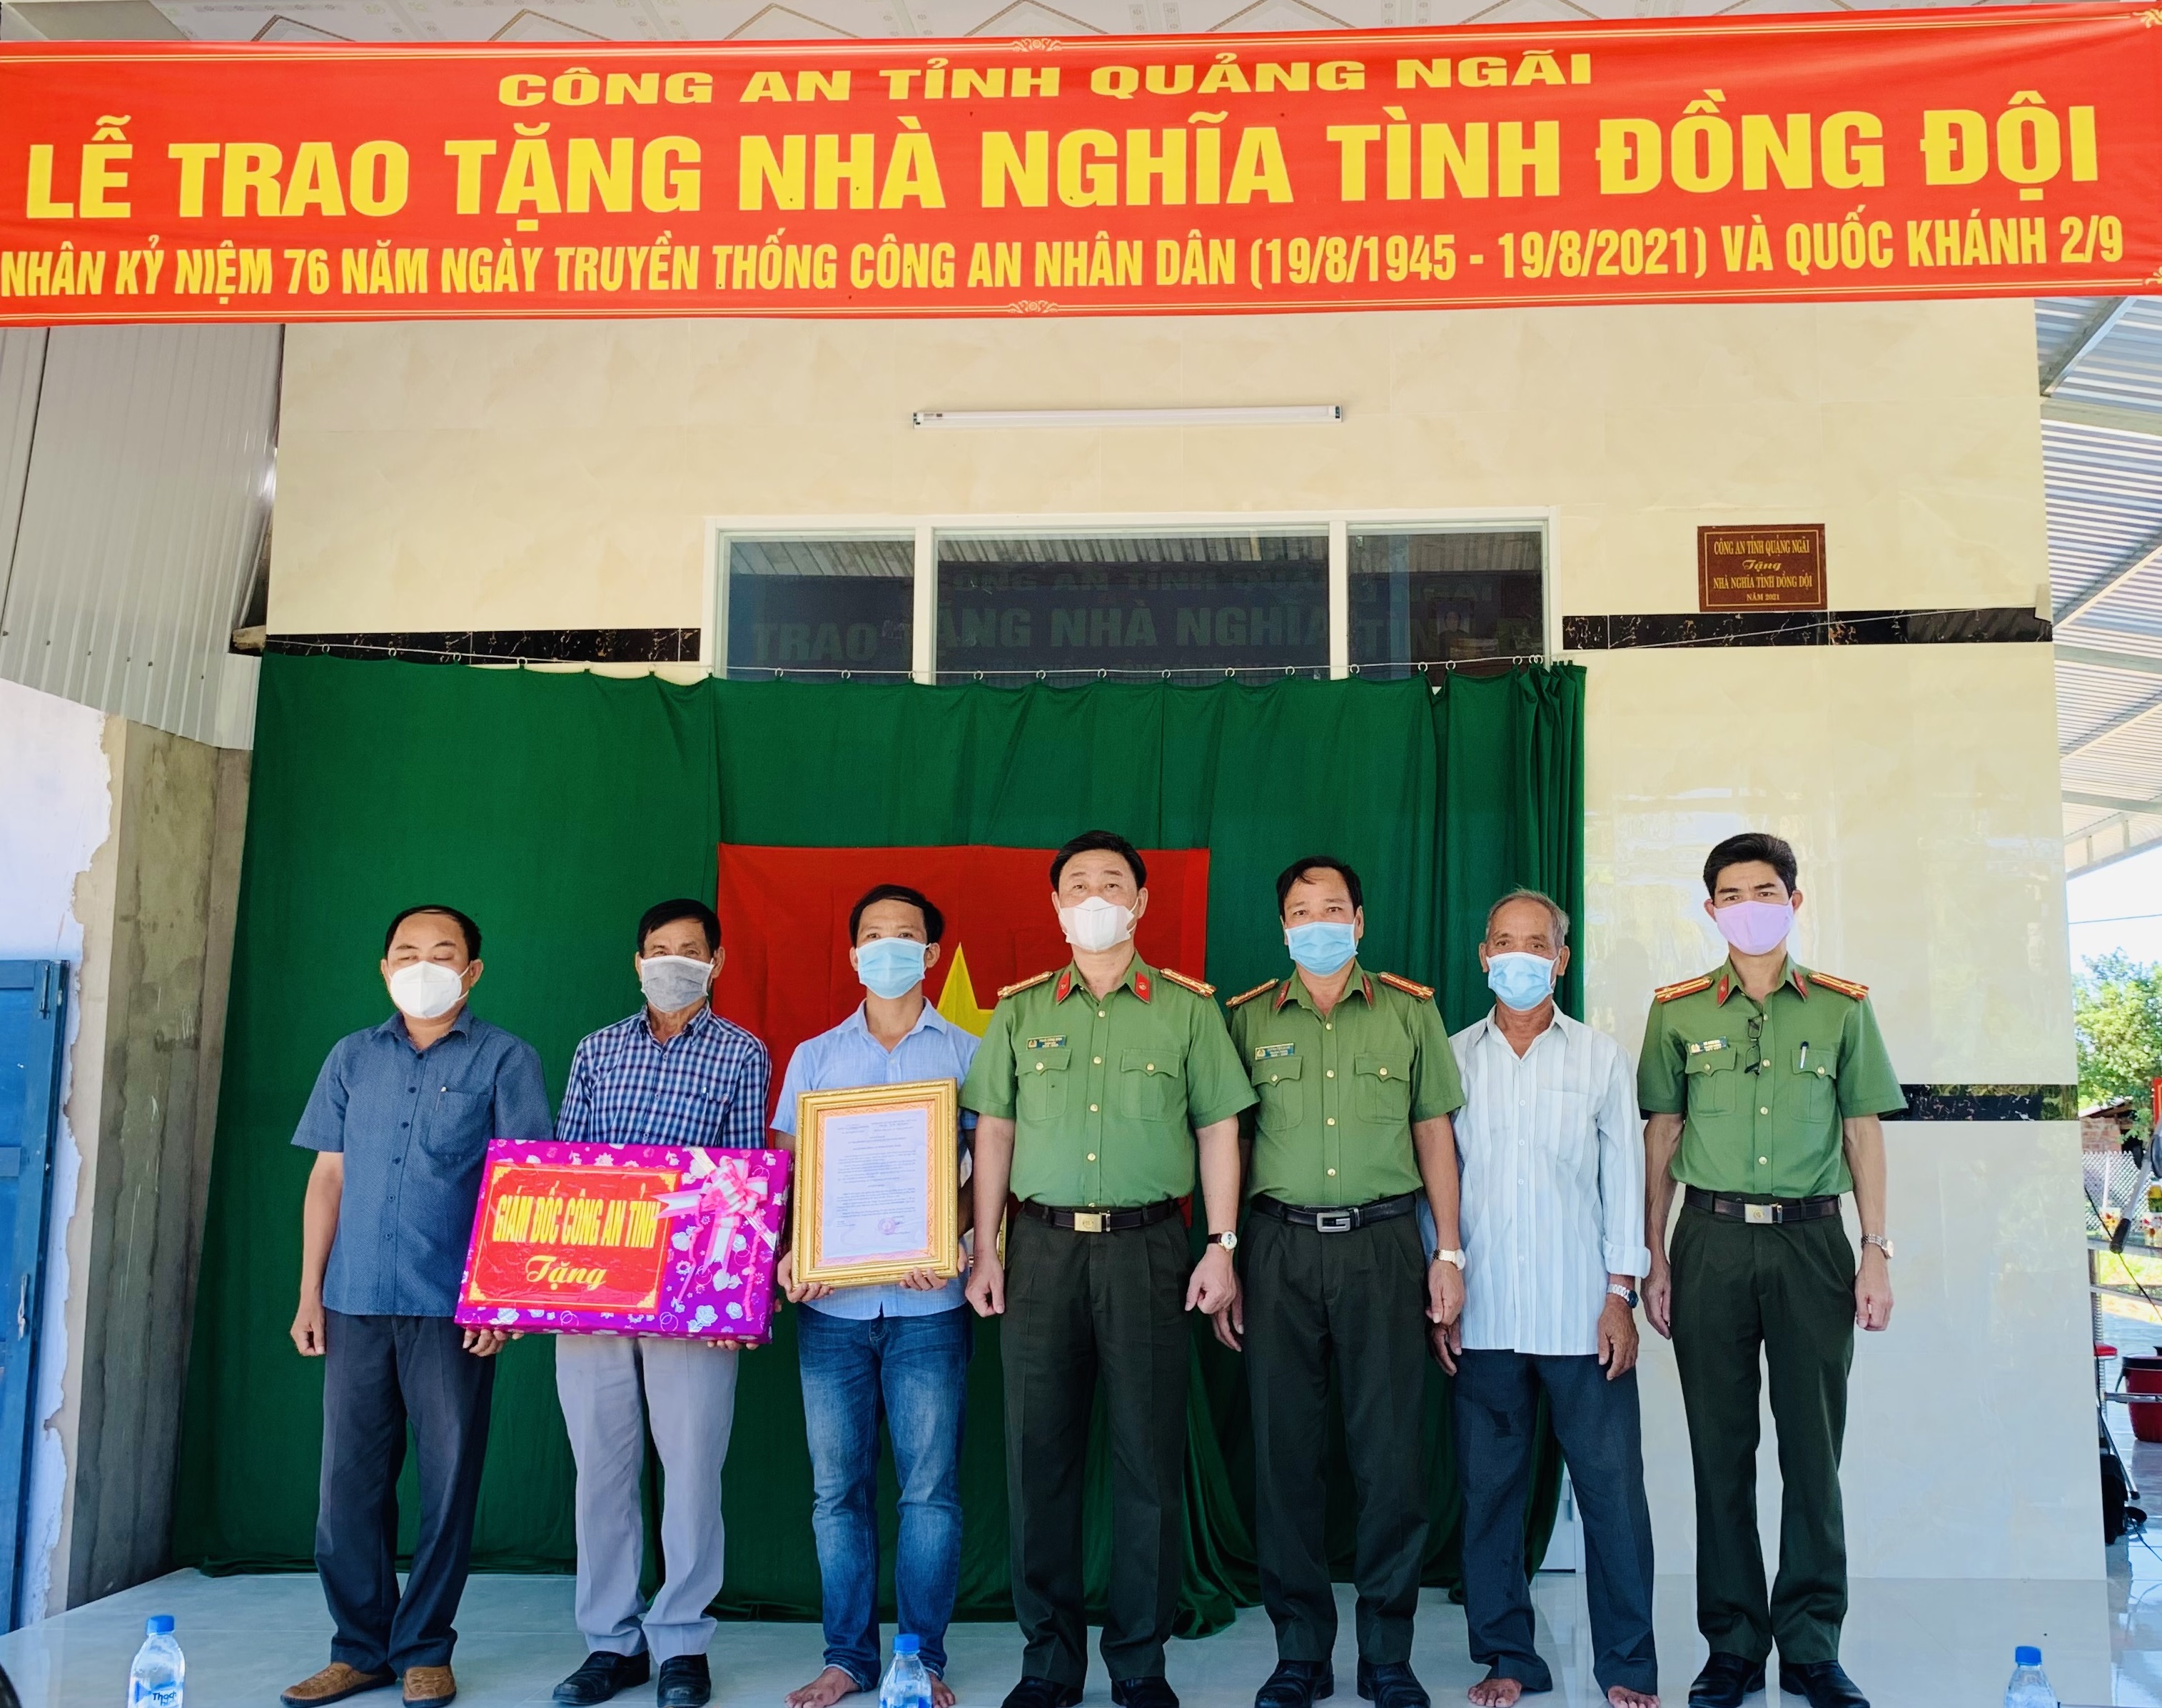 Công an tỉnh Quảng Ngãi trao tặng nhà nghĩa tình đồng đội nhân dịp kỷ niệm 76 năm Ngày truyền thống Công an nhân dân Việt Nam